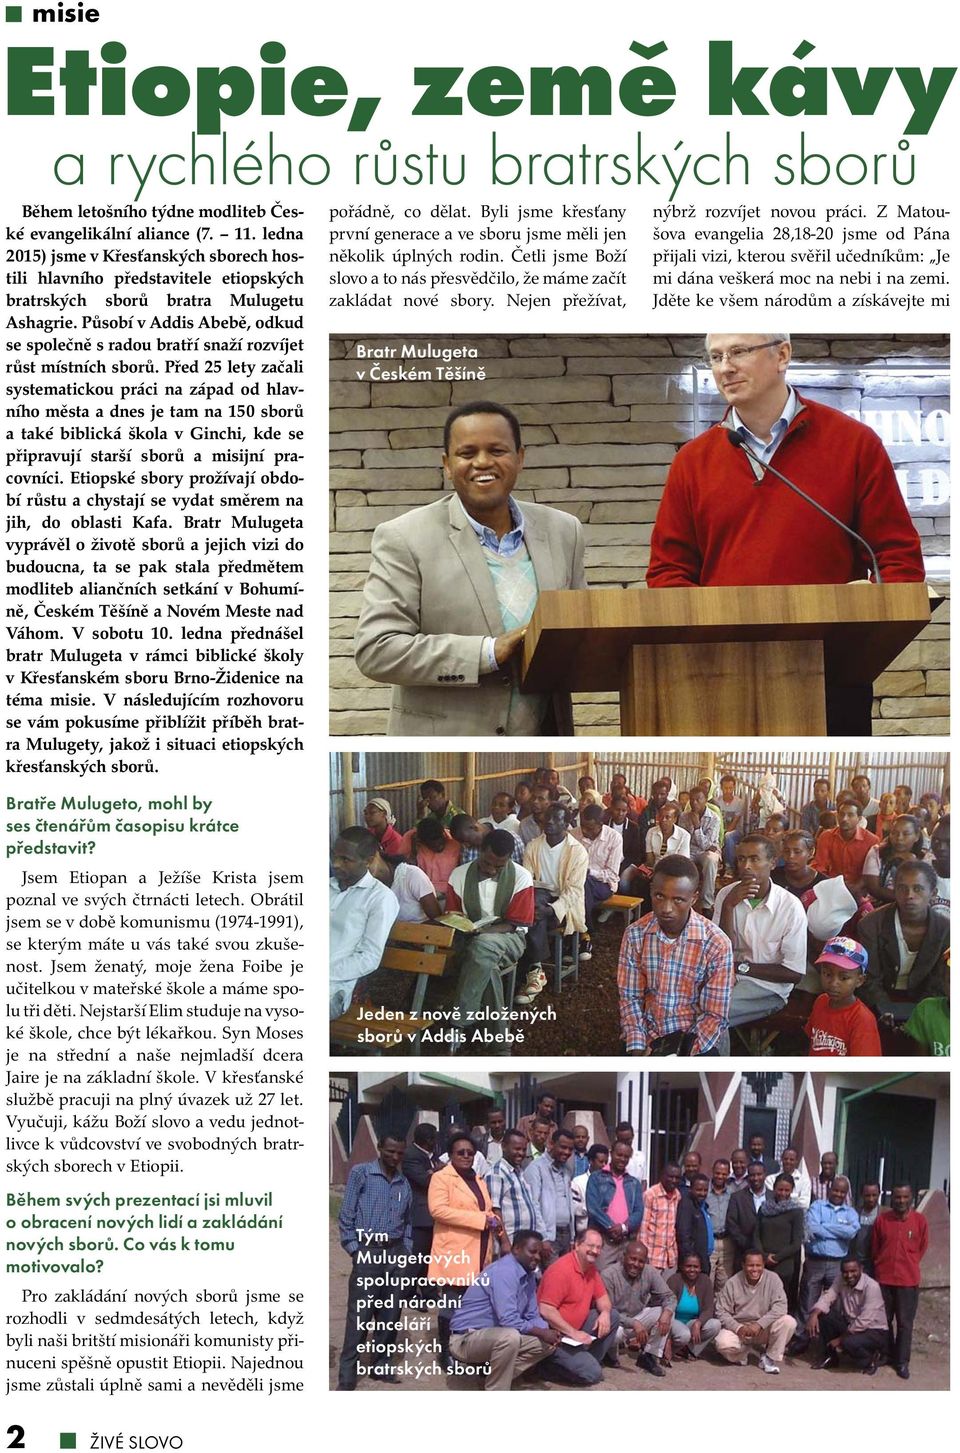 Působí v Addis Abebě, odkud se společně s radou bratří snaží rozvíjet růst místních sborů.